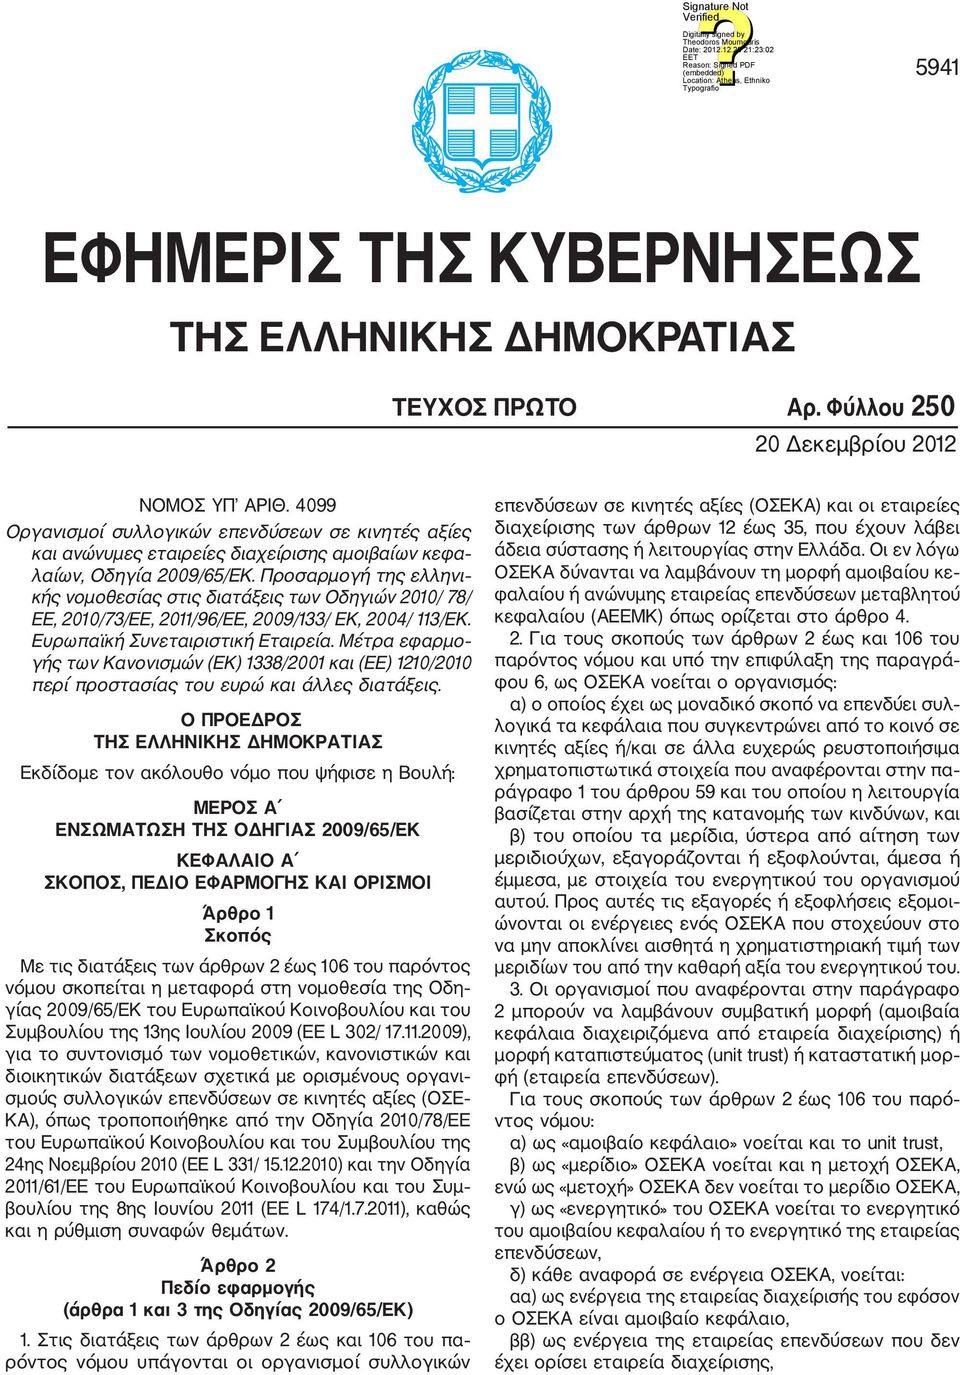 Προσαρμογή της ελληνι κής νομοθεσίας στις διατάξεις των Οδηγιών 2010/ 78/ ΕΕ, 2010/73/ΕΕ, 2011/96/ΕΕ, 2009/133/ ΕΚ, 2004/ 113/ΕK. Ευρωπαϊκή Συνεταιριστική Εταιρεία.